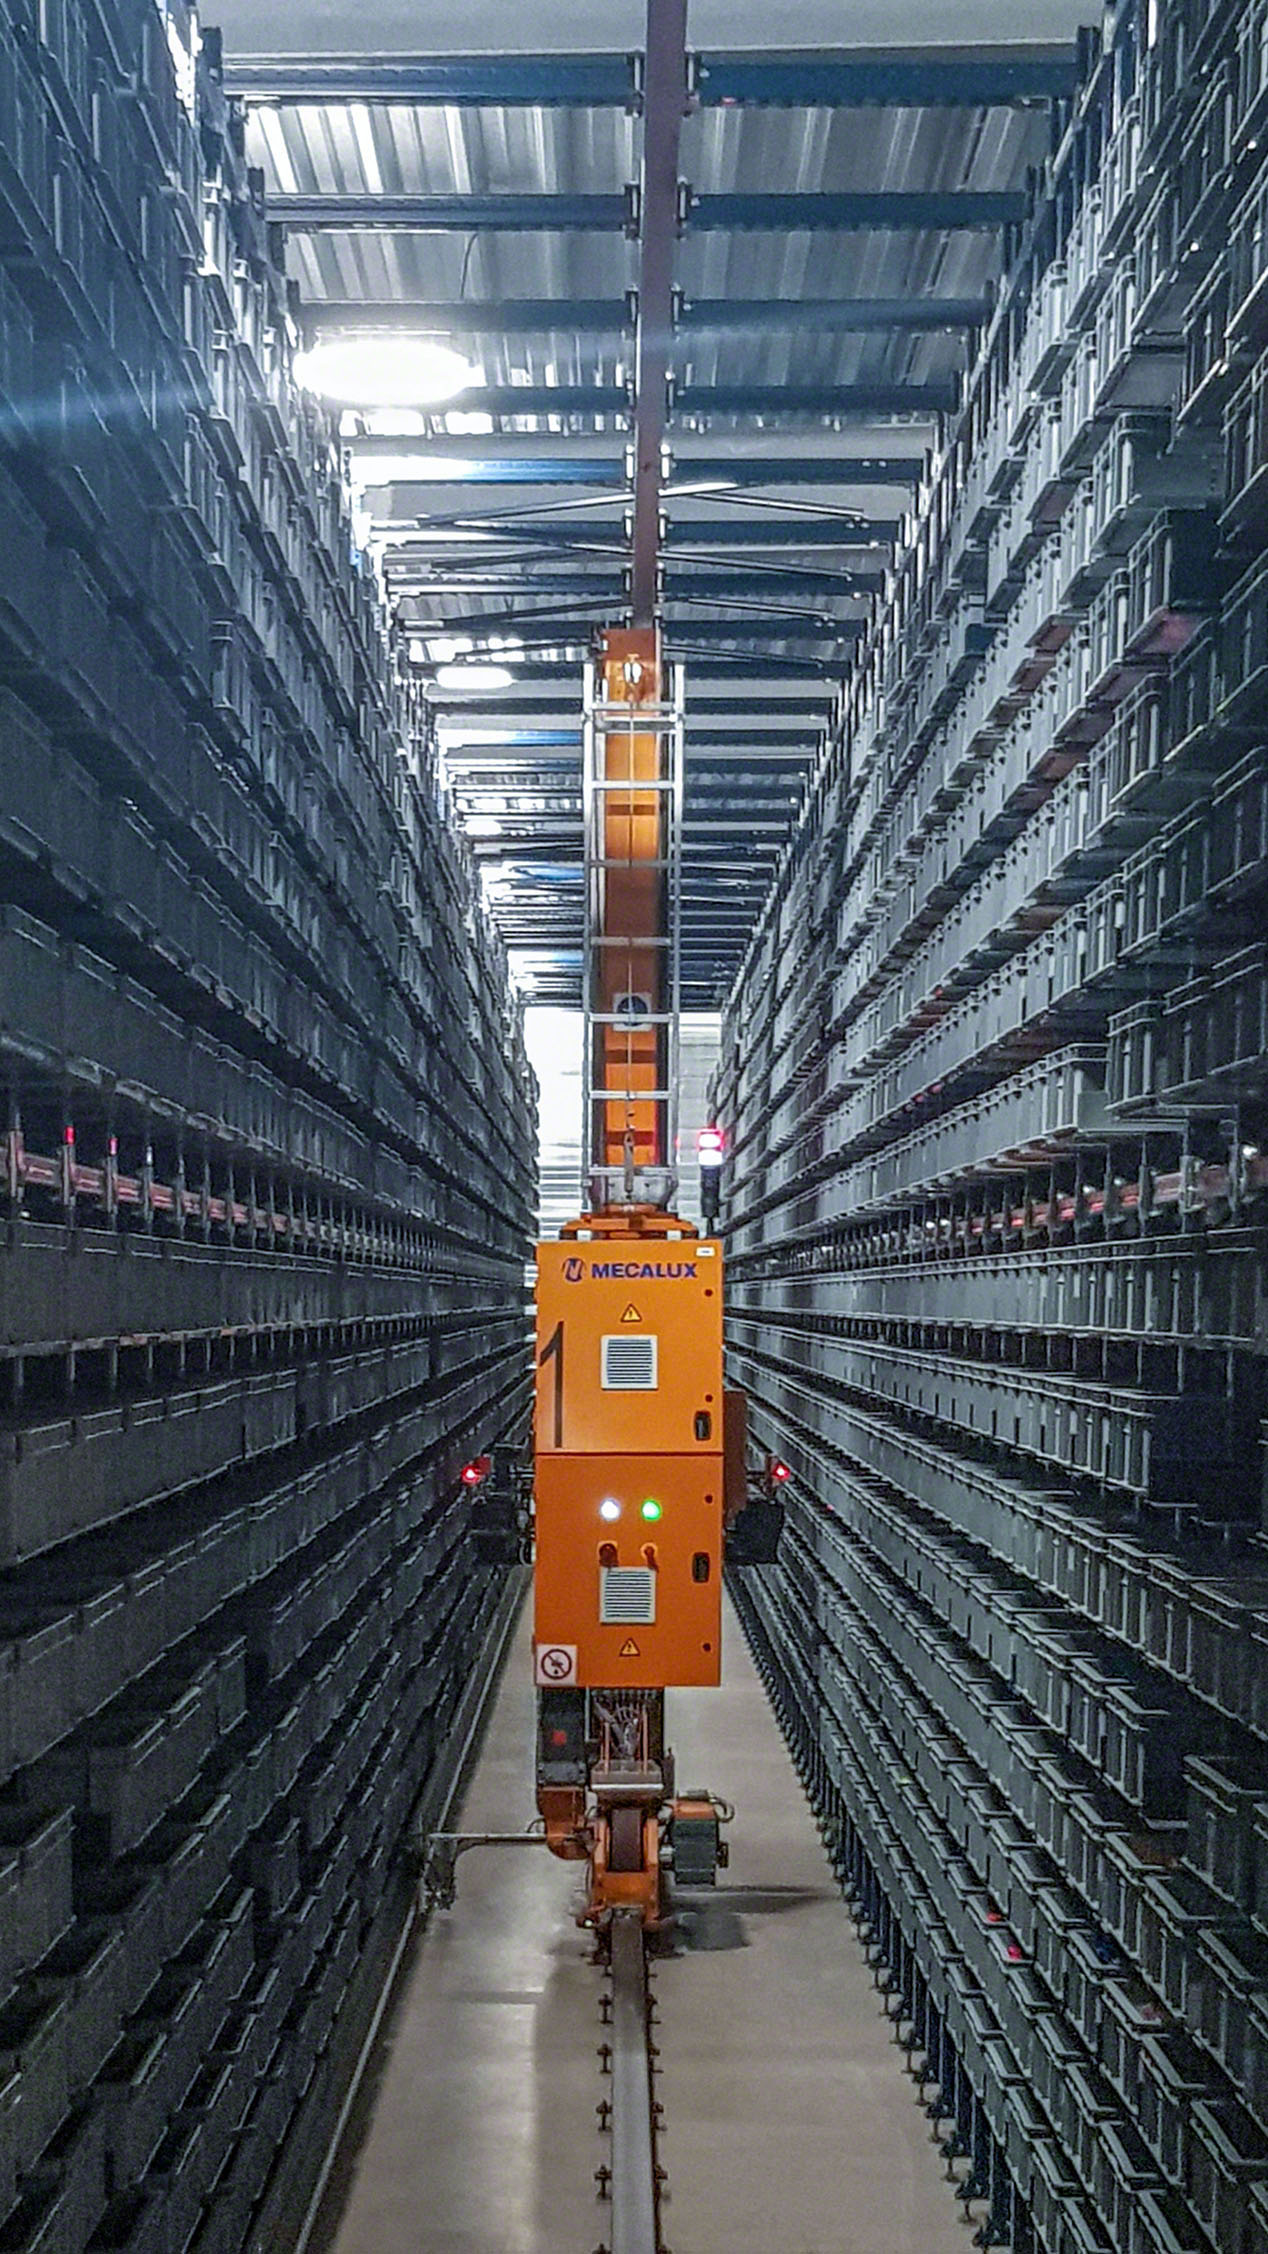 Armazenamento automático de 7.800 caixas com peças de brinquedo